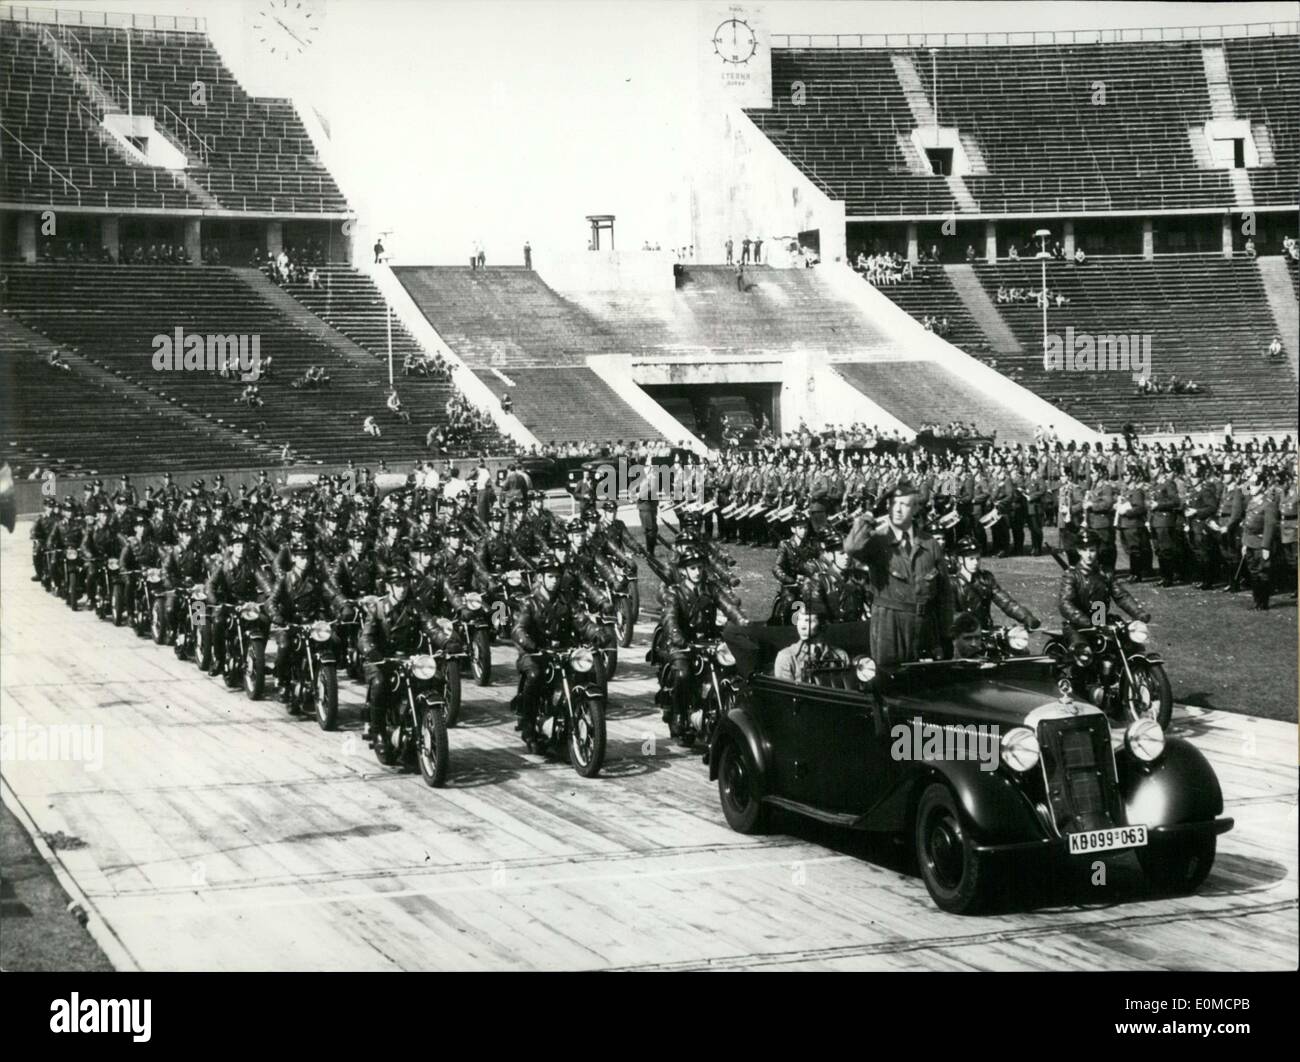 Septembre 03, 1954 - Des unités de police de Berlin est arrivé dans le Stade Olympique de Berlin pour leur assemblée annuelle ''Polizeisportsfest'', un événement pour la police. Banque D'Images